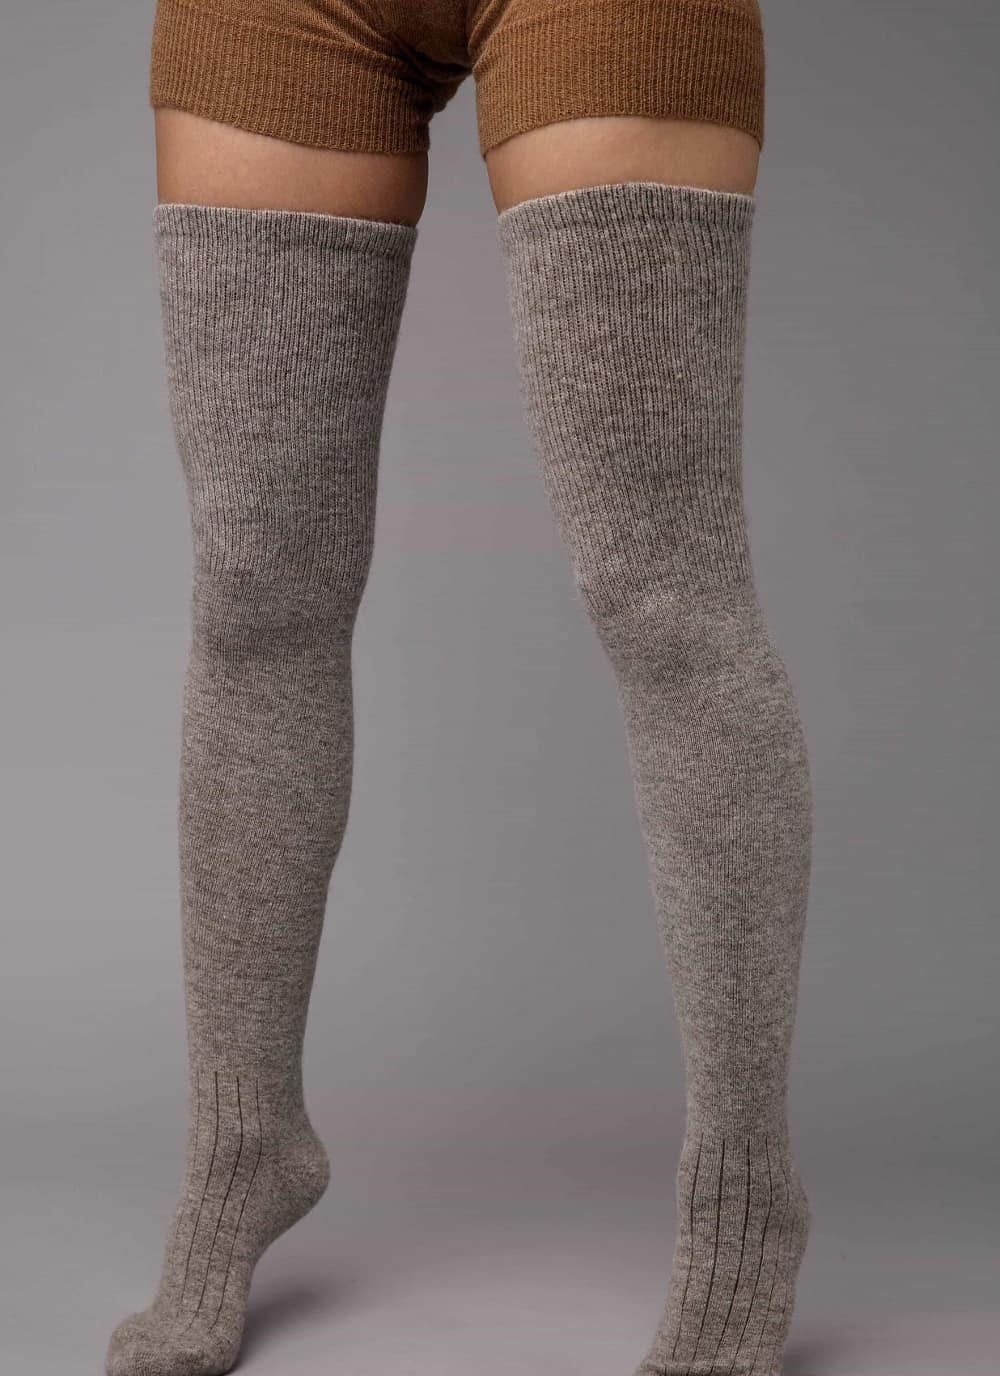 Sheep Wool Dark Grey Thigh High Socks - Etsy